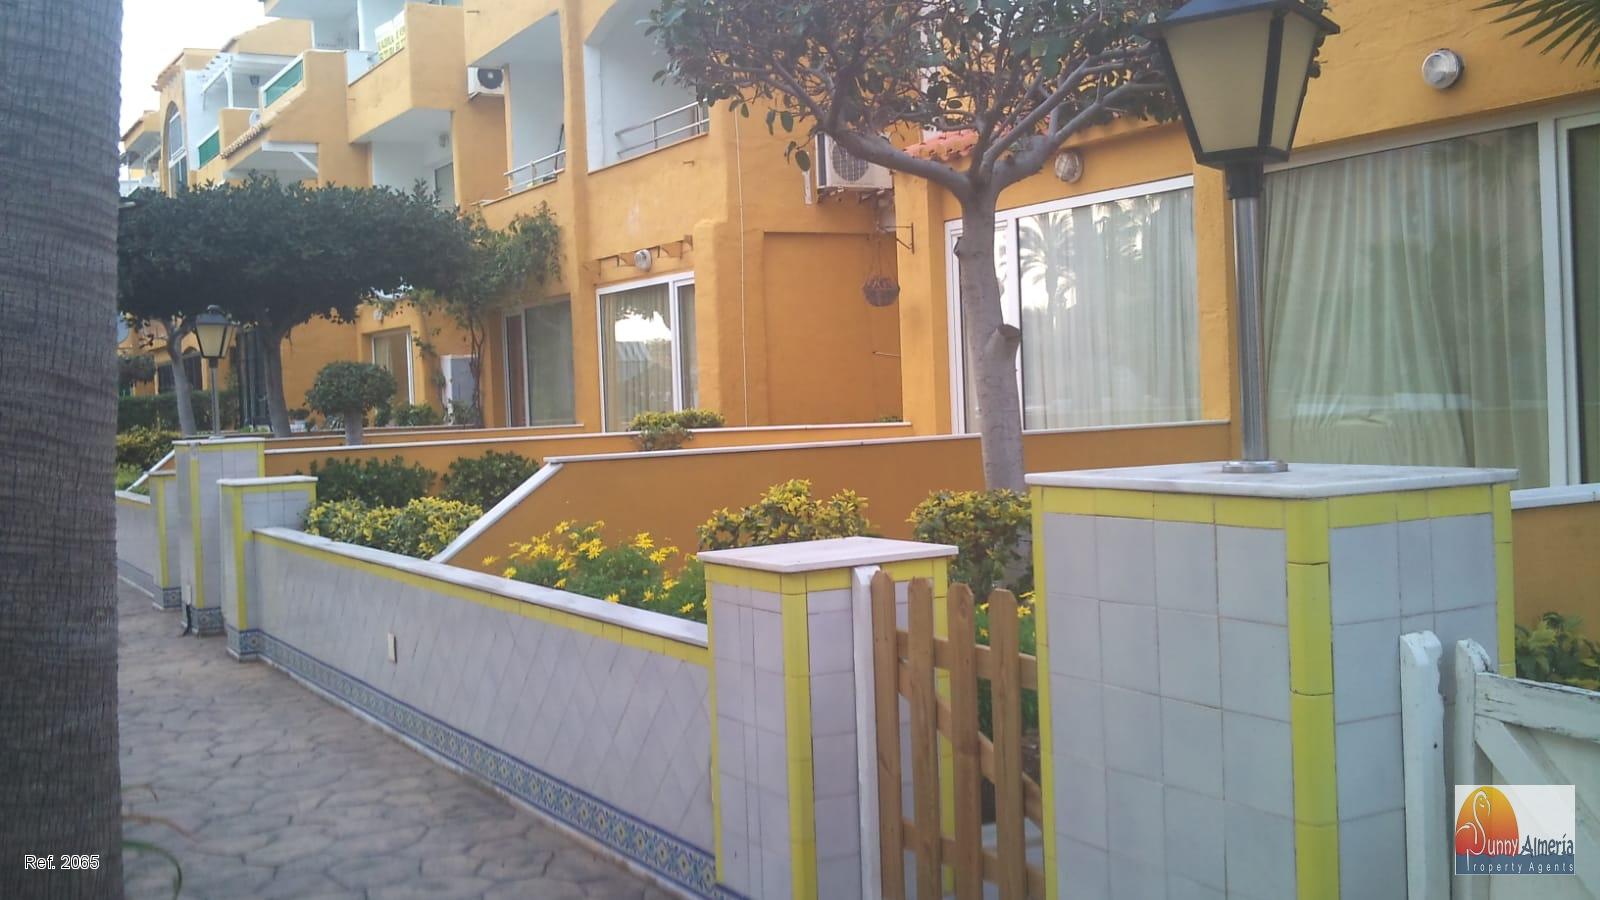 Lejlighed udlejes på lang tid I Avenida Entremares 112 (Roquetas de Mar), 700€/måned